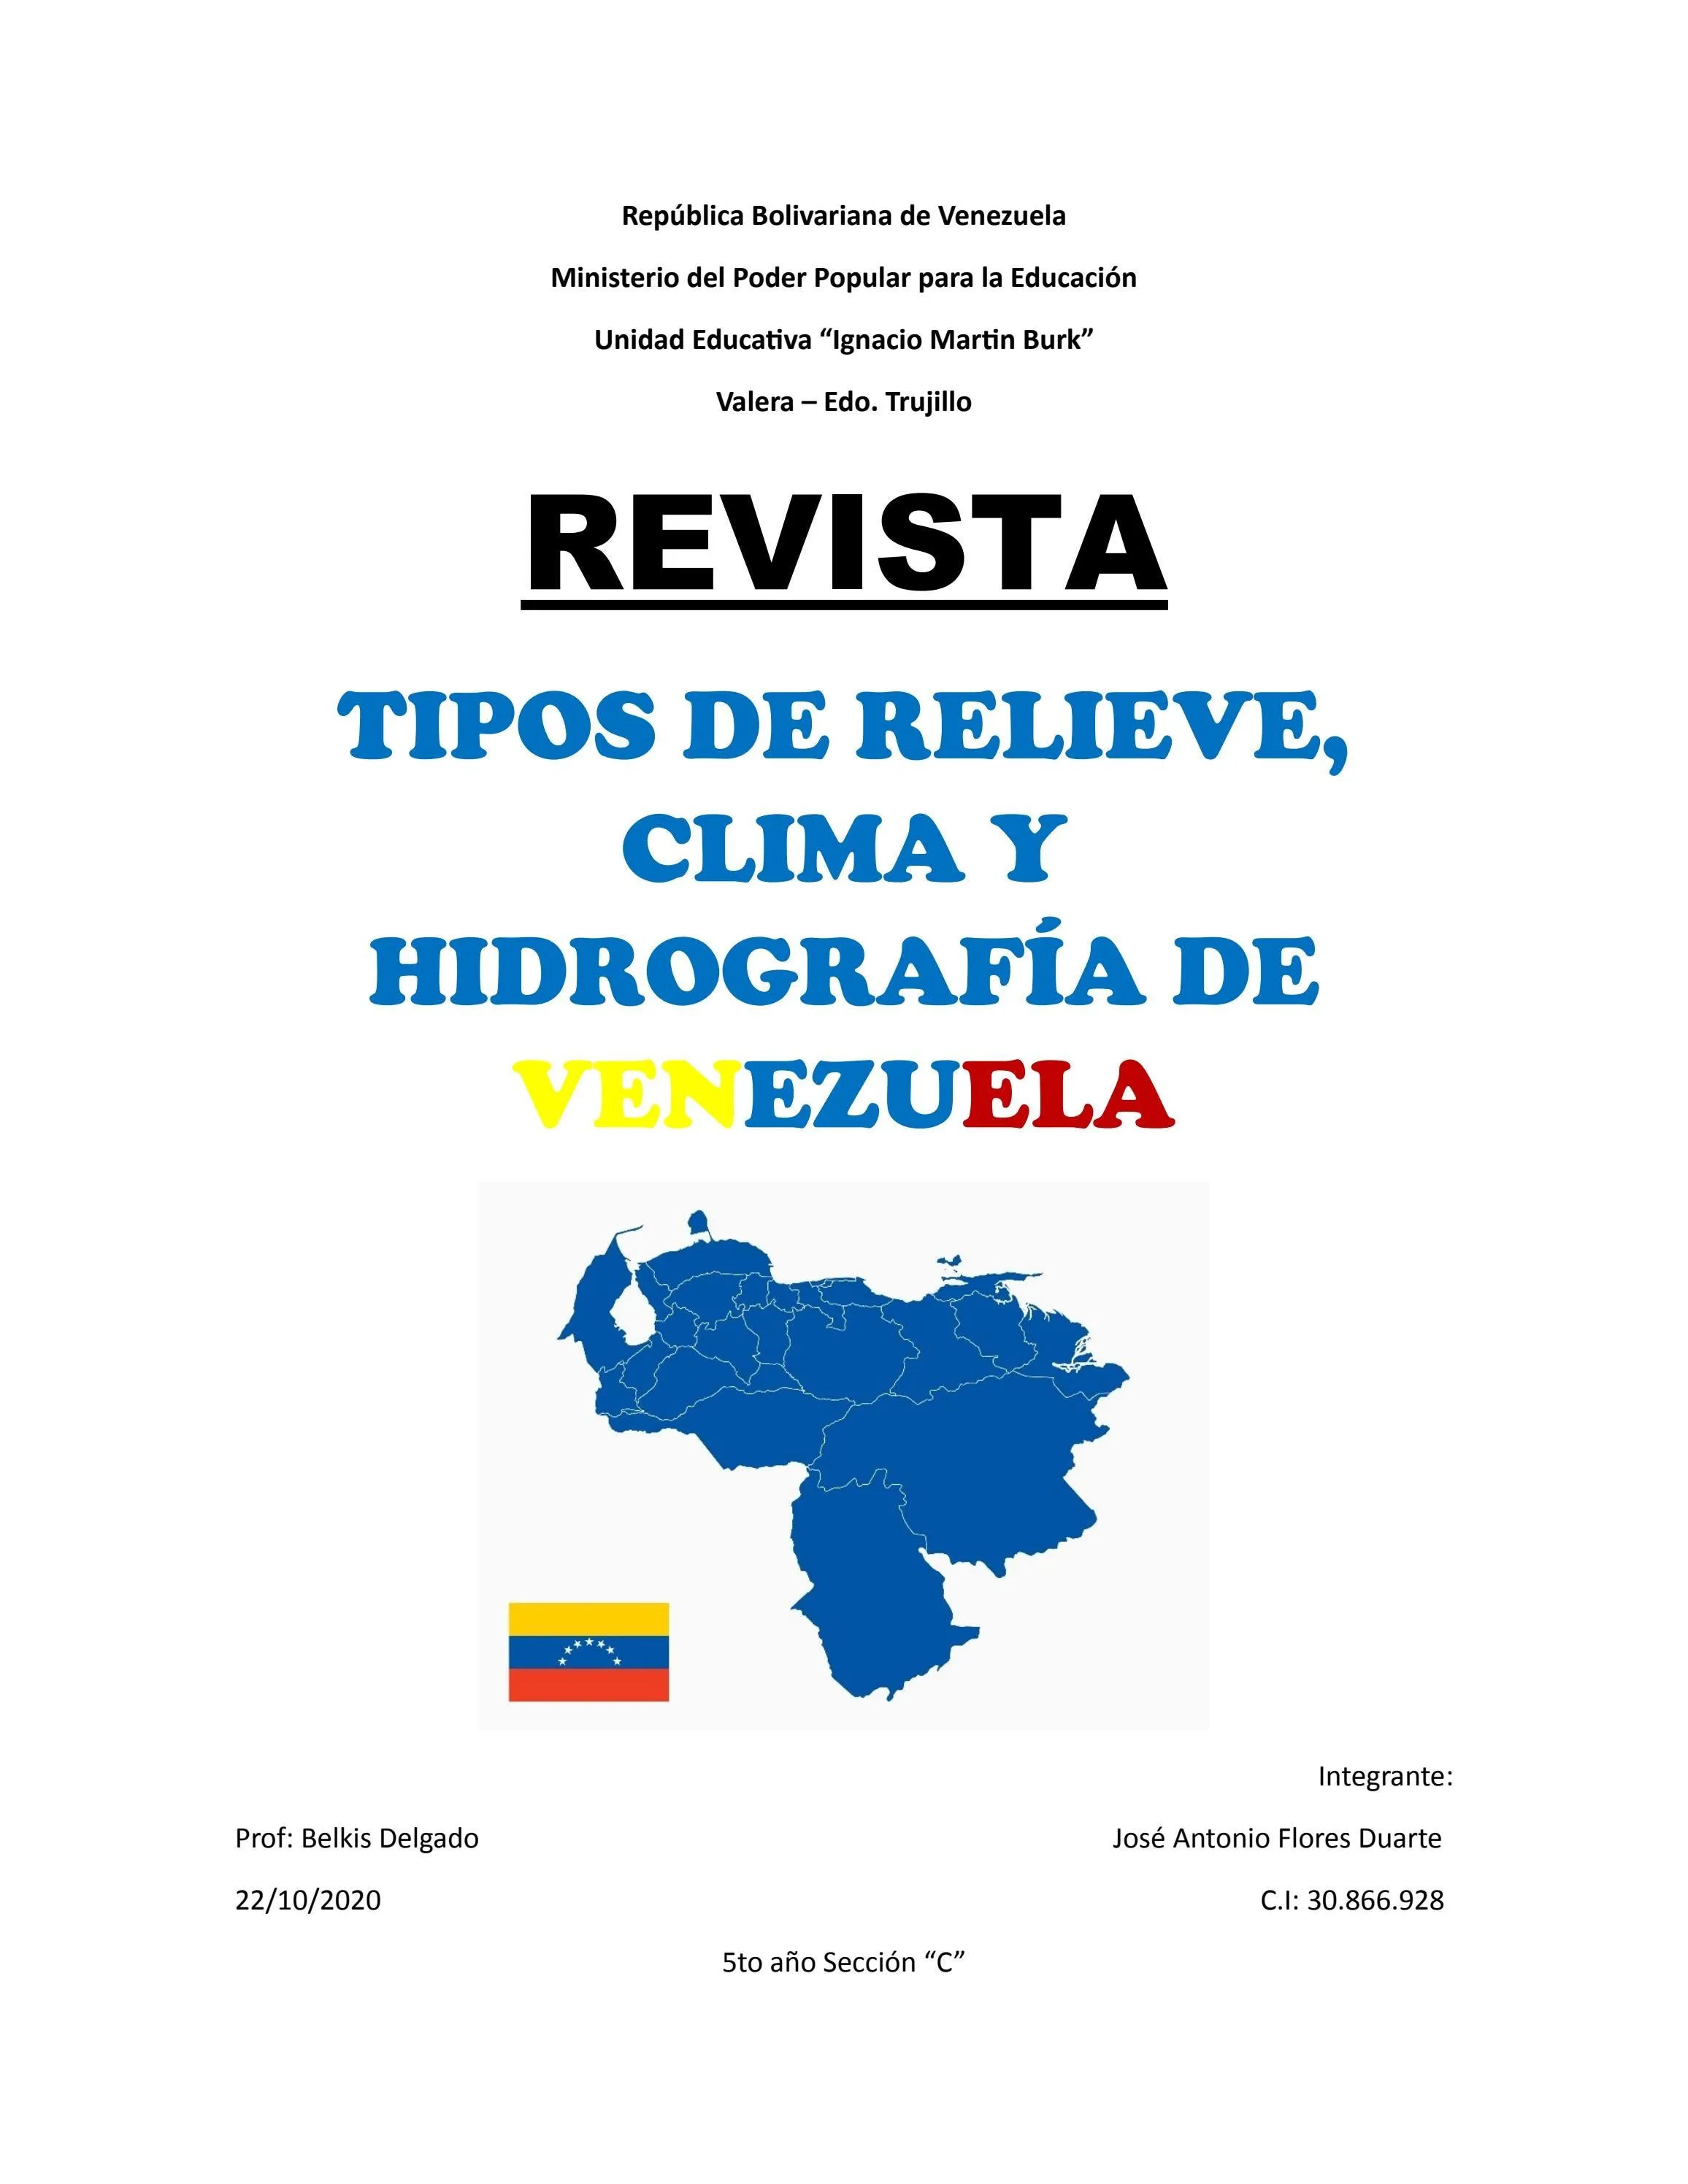 Tipos de relieve, clima y la hidrografía de Venezuela by y x t s e - Issuu